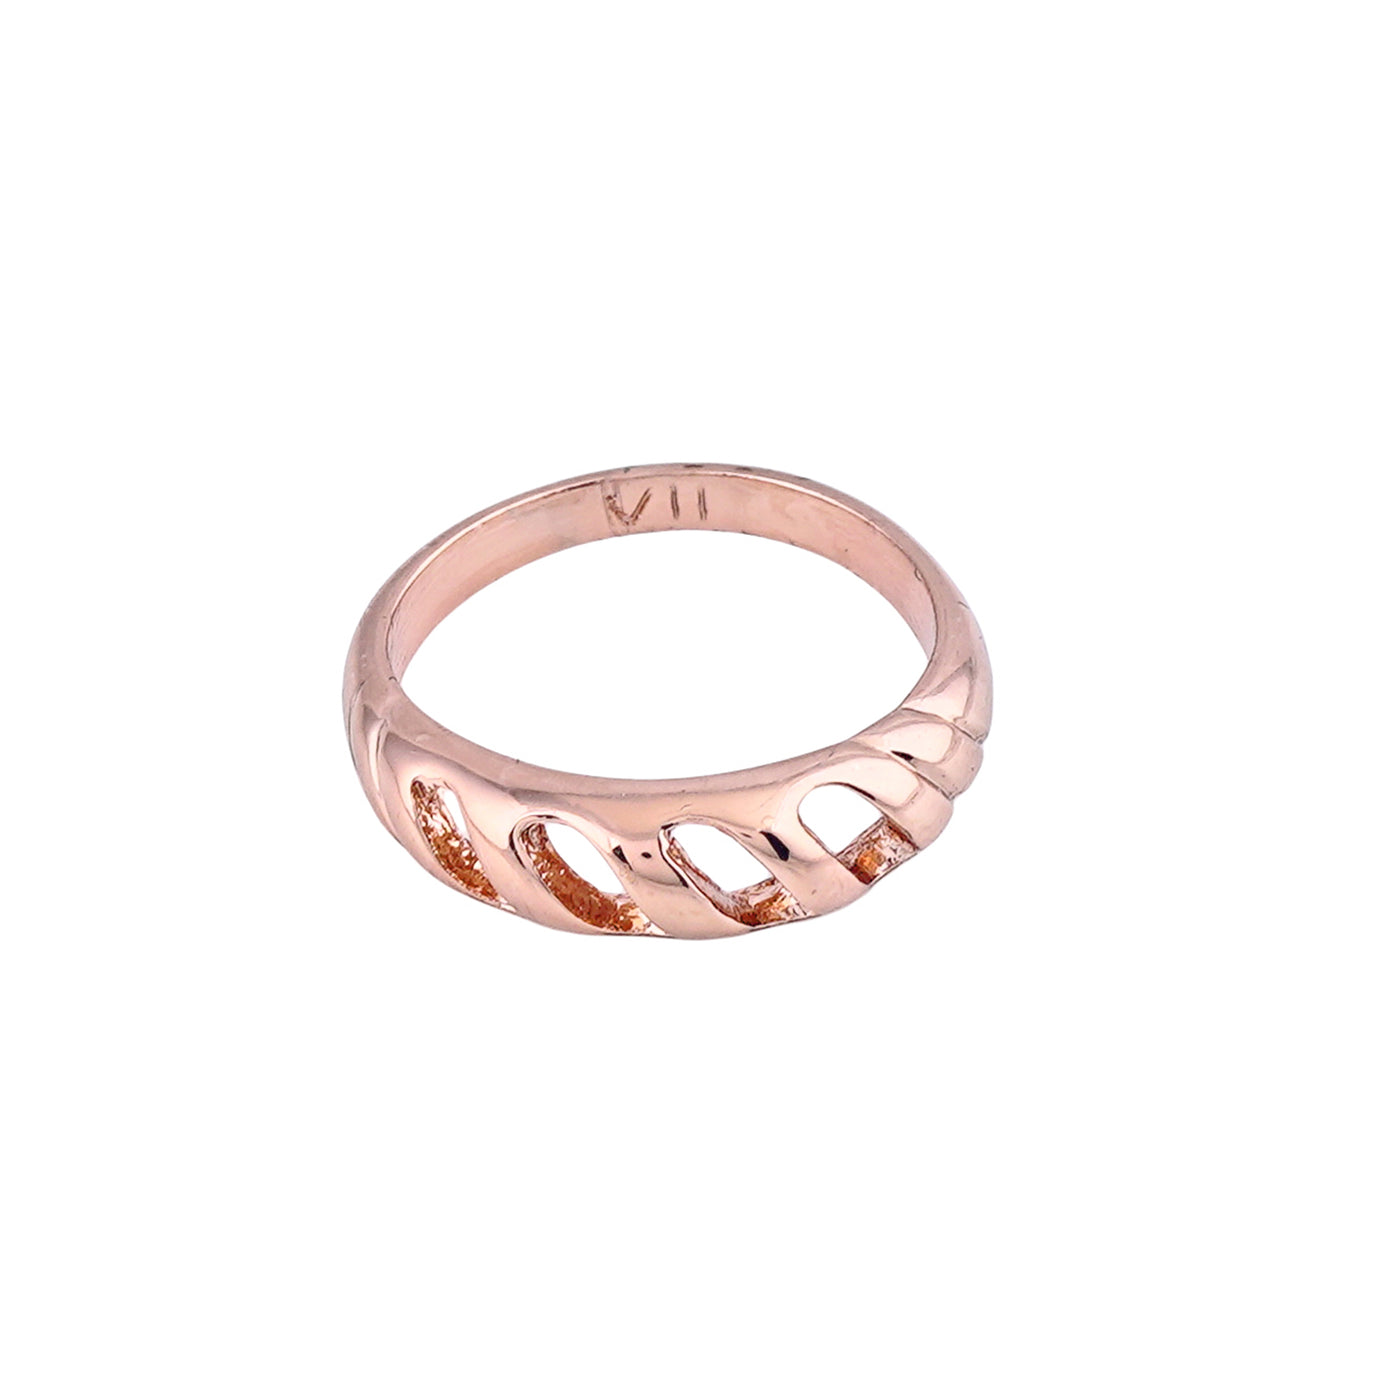 Estele Rose Gold Plated Stunning Finger Ring for Women